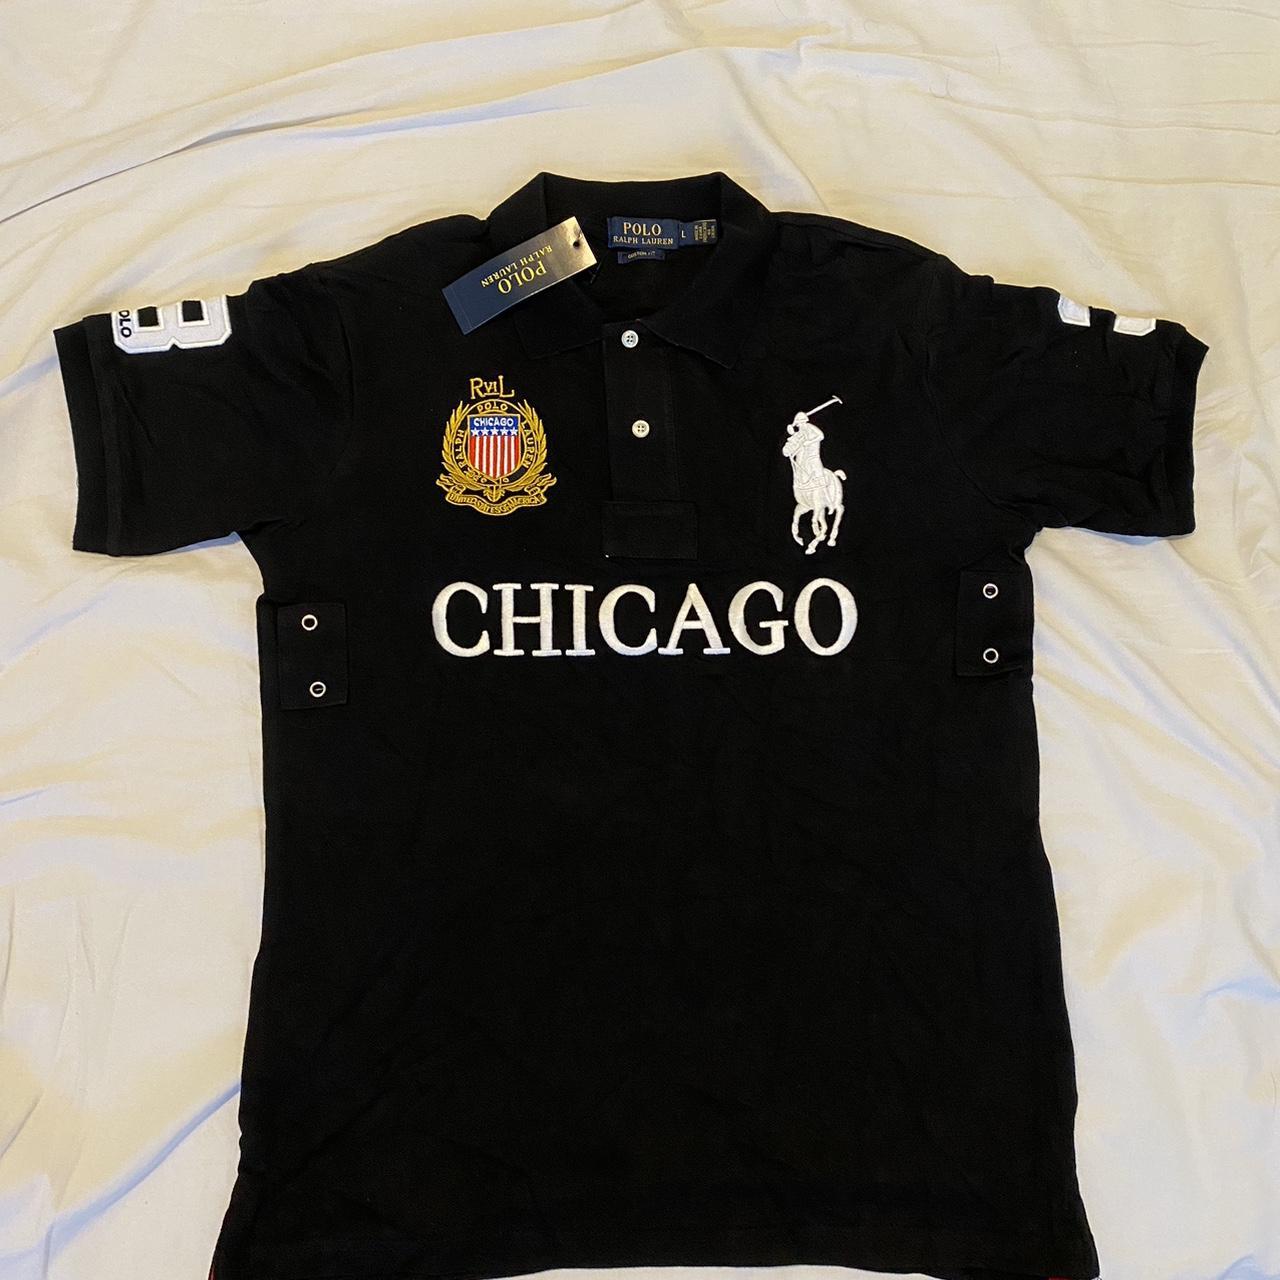 Ralph Lauren Polo Chicago Chief Keef Shirt Very... - Depop